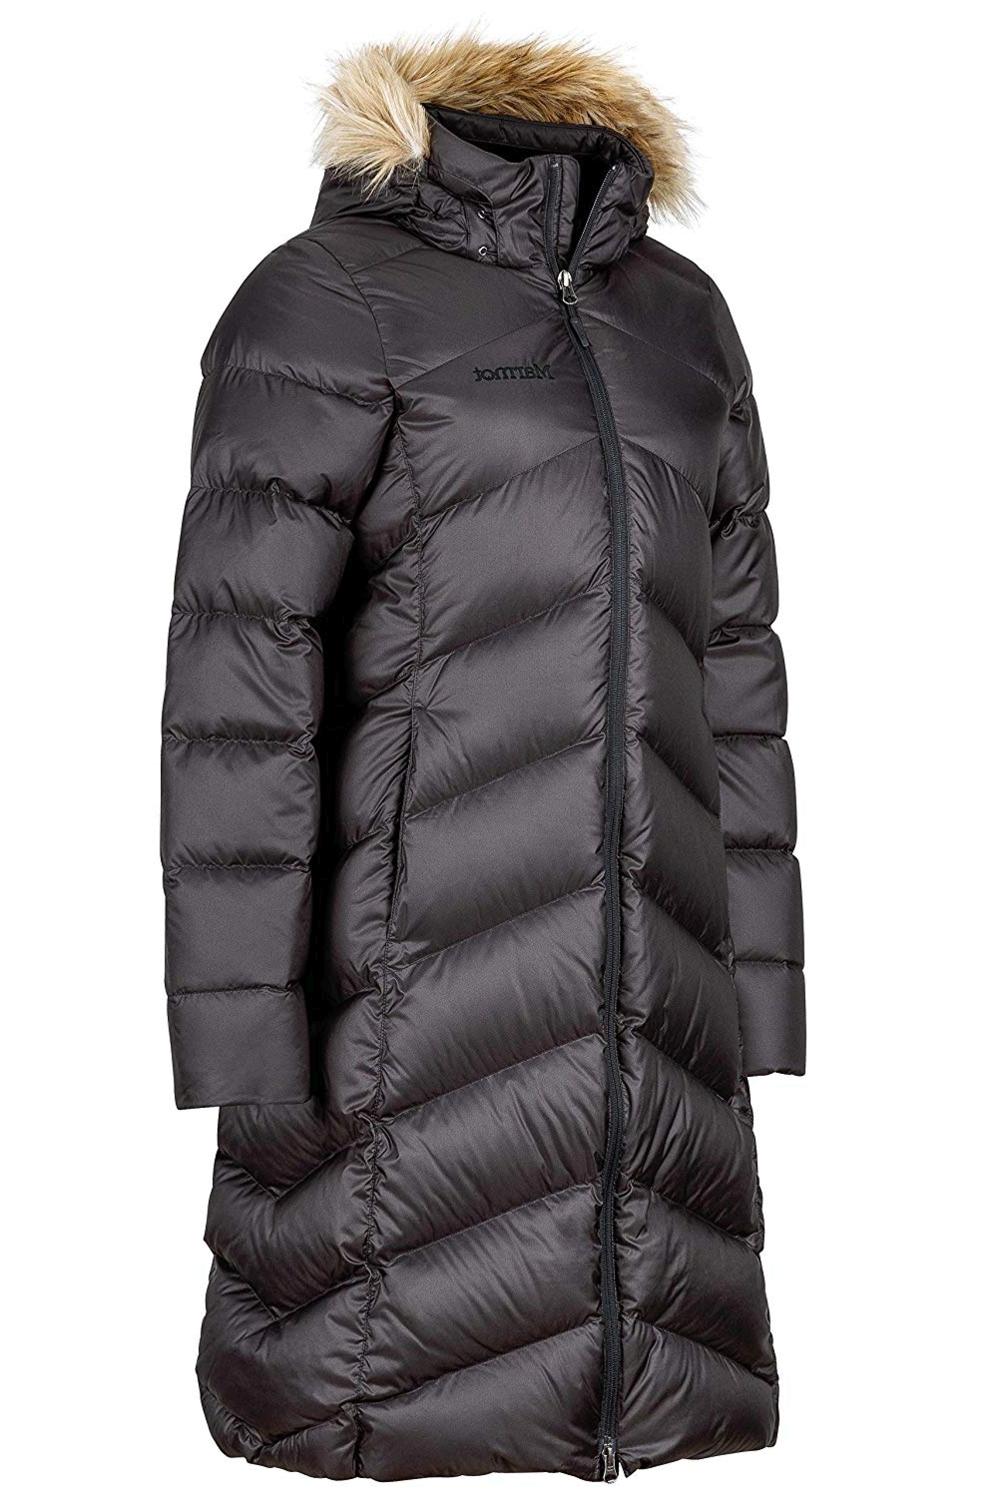 Marmot Montreaux Women's Full-Length Down Puffer Coat,, Jet Black, Size Medium j | eBay